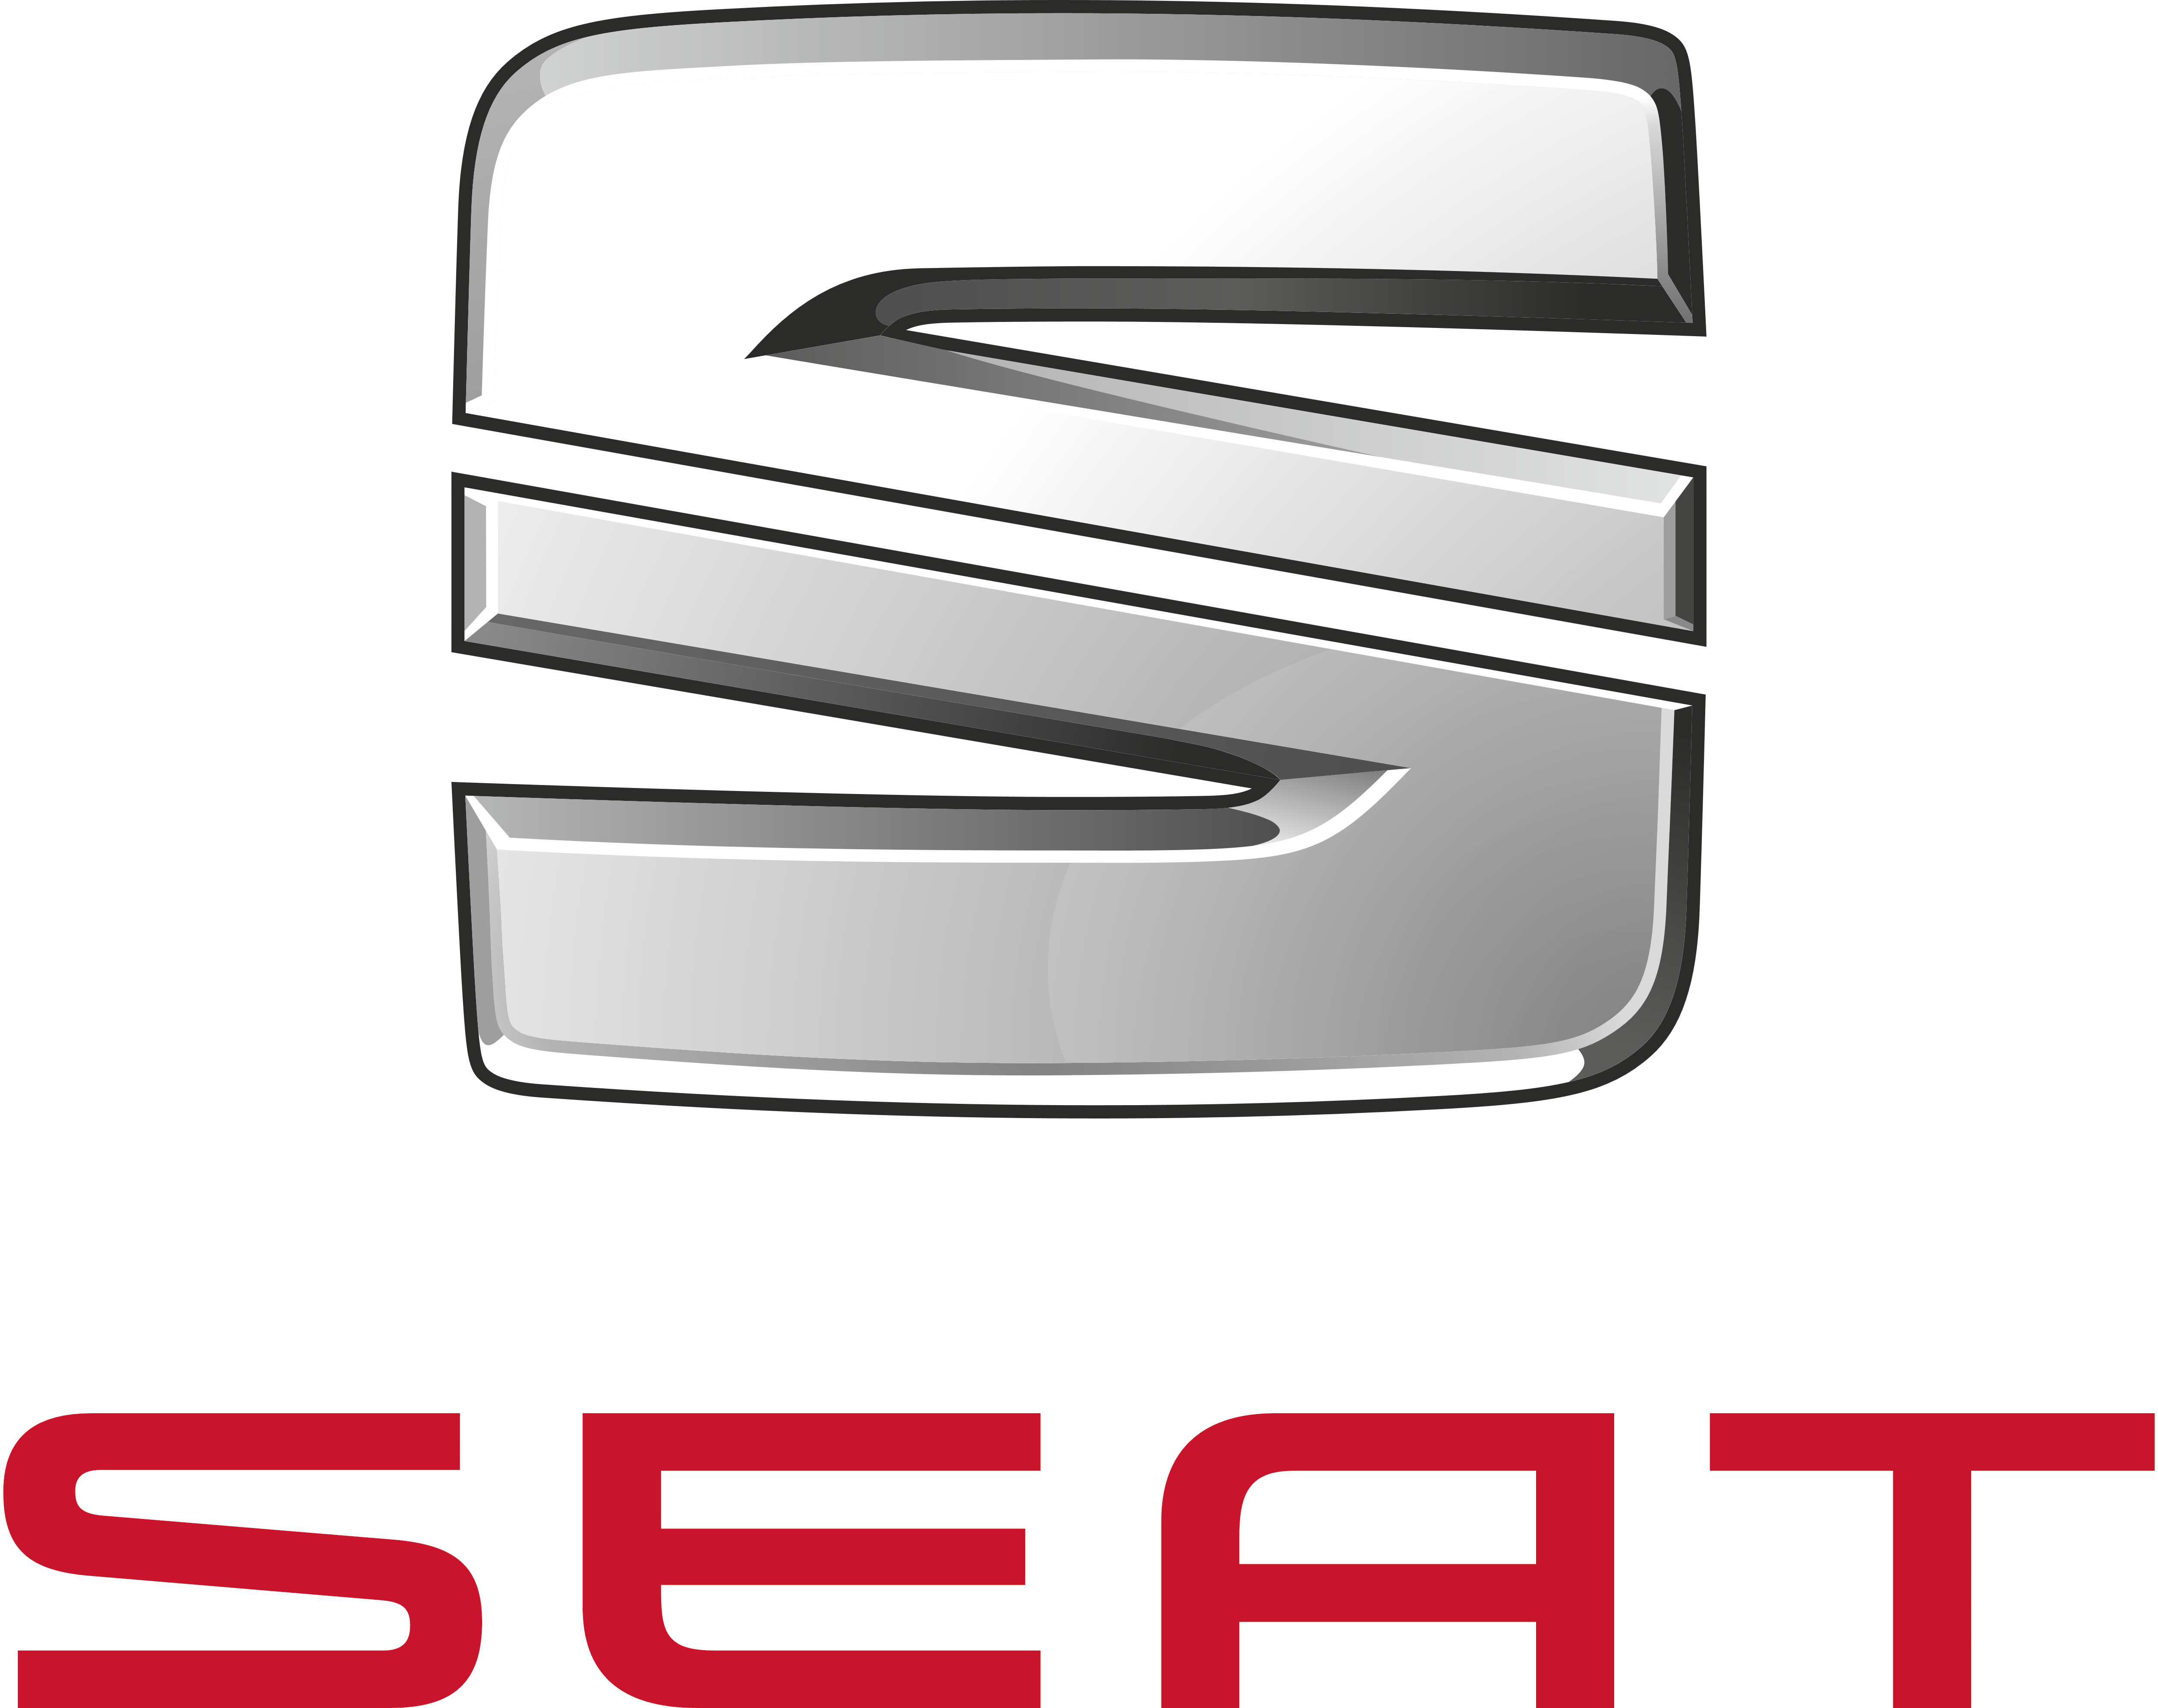 Seat Logo Png - Seat, Transpa